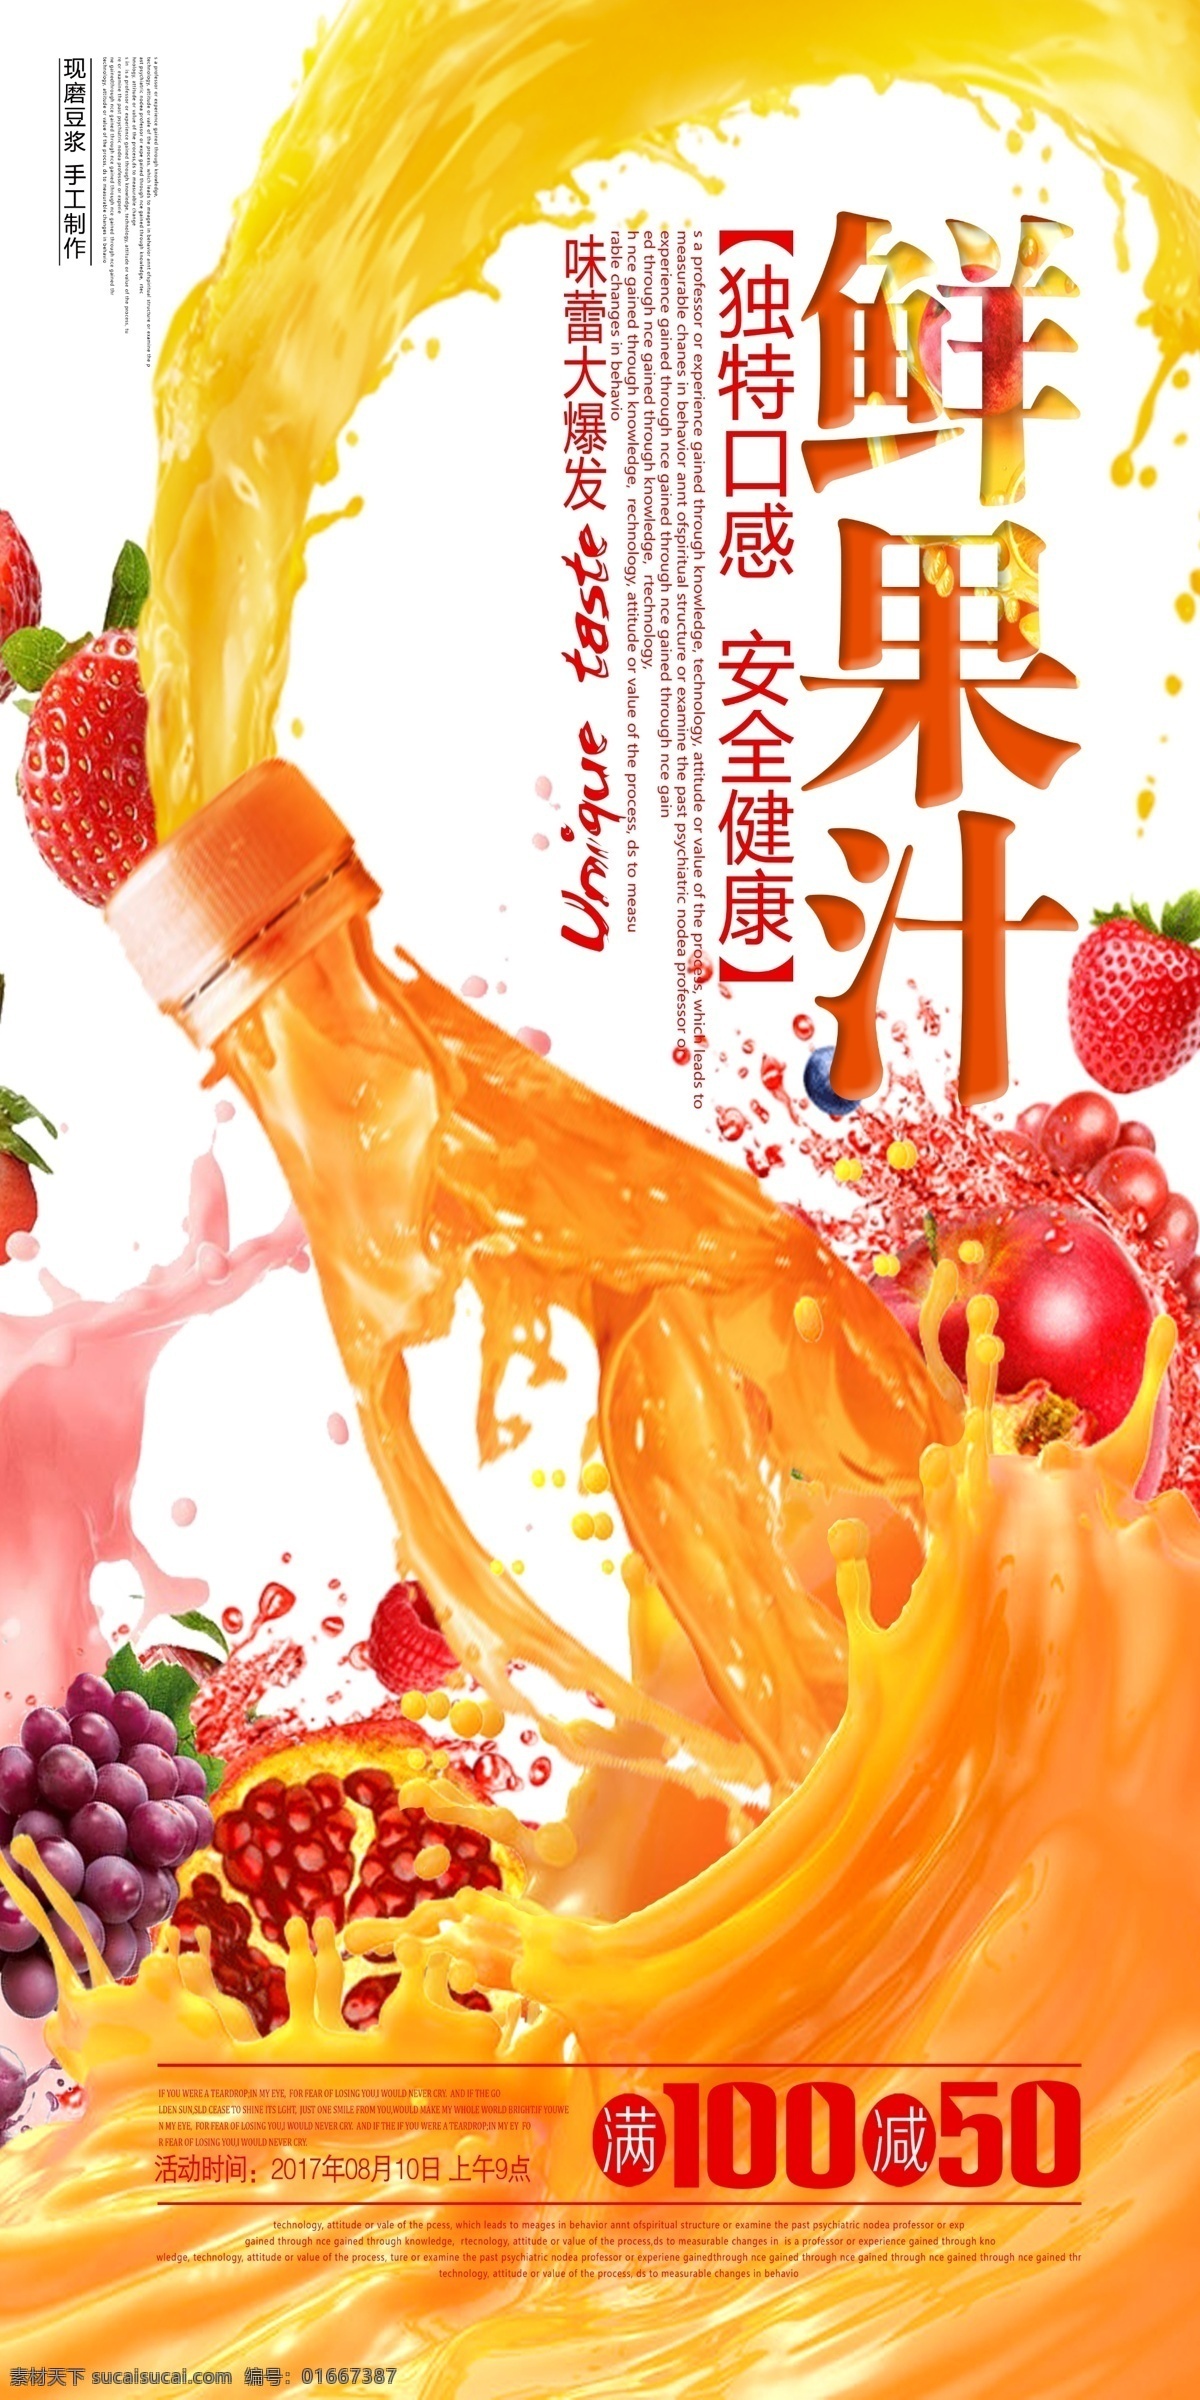 鲜果汁 草莓 果汁 石榴 瓶子